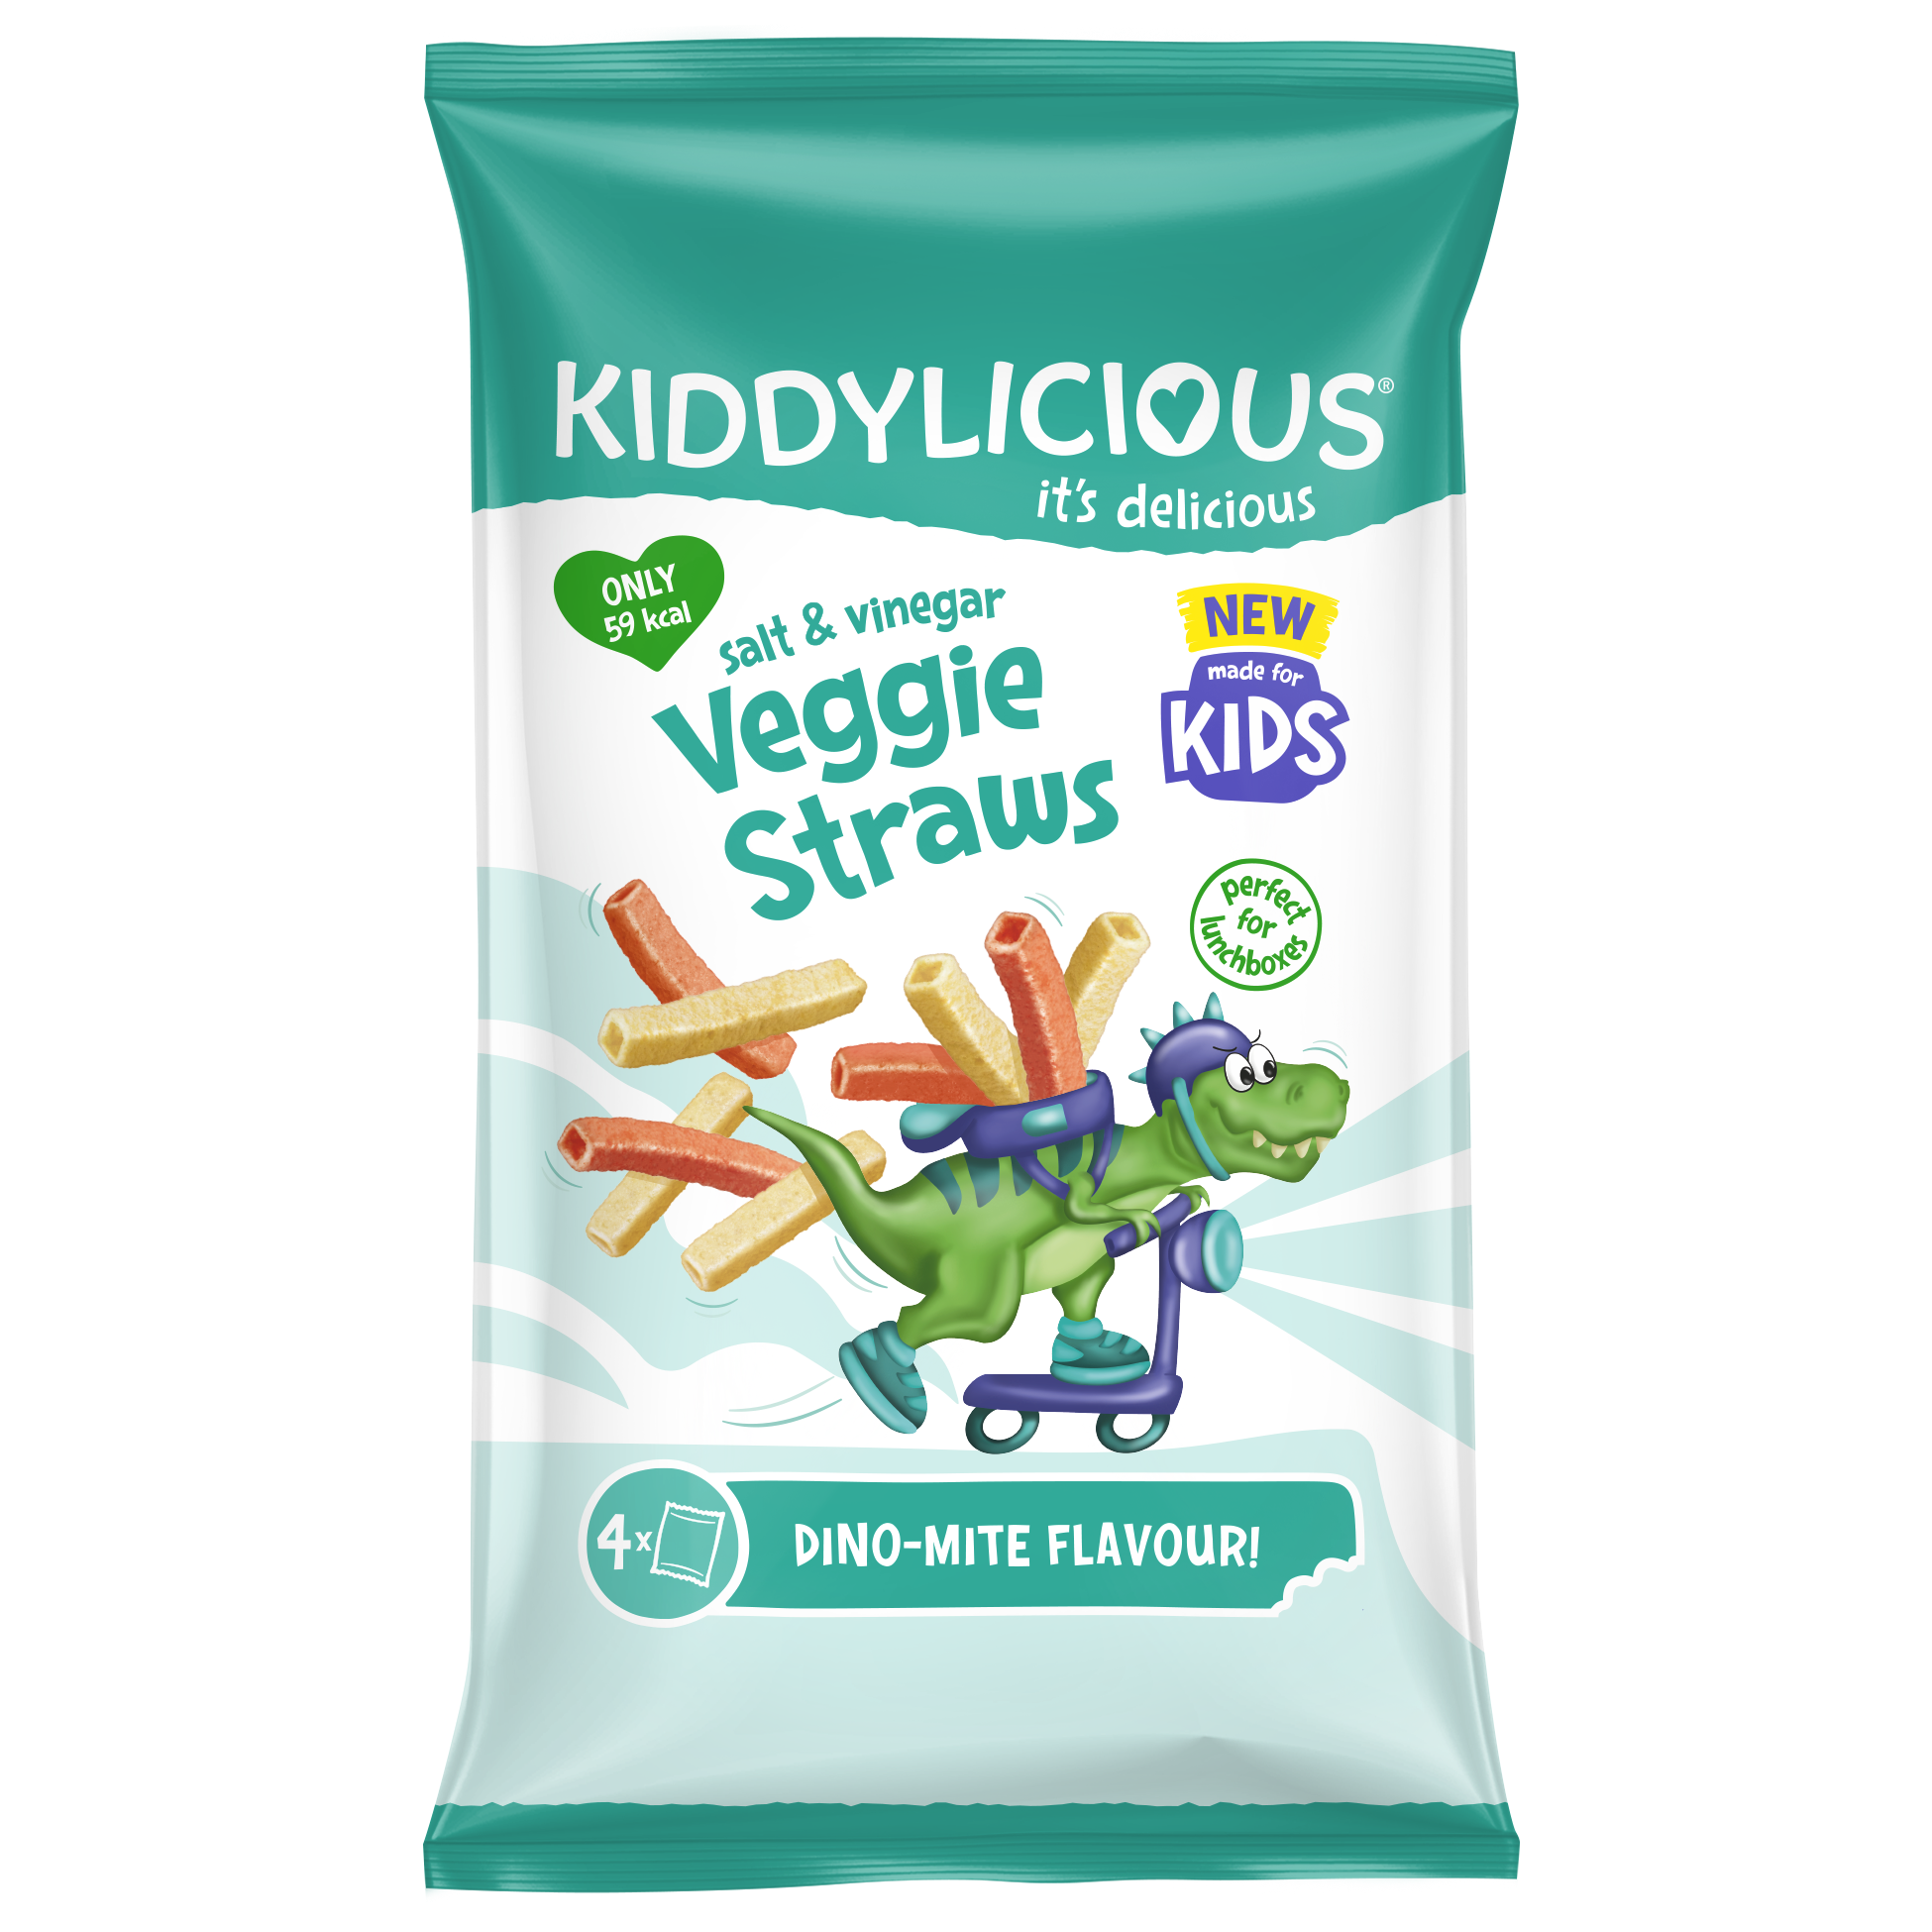 Kiddylicious - Cheesy Veggie Straws Pack Of 10